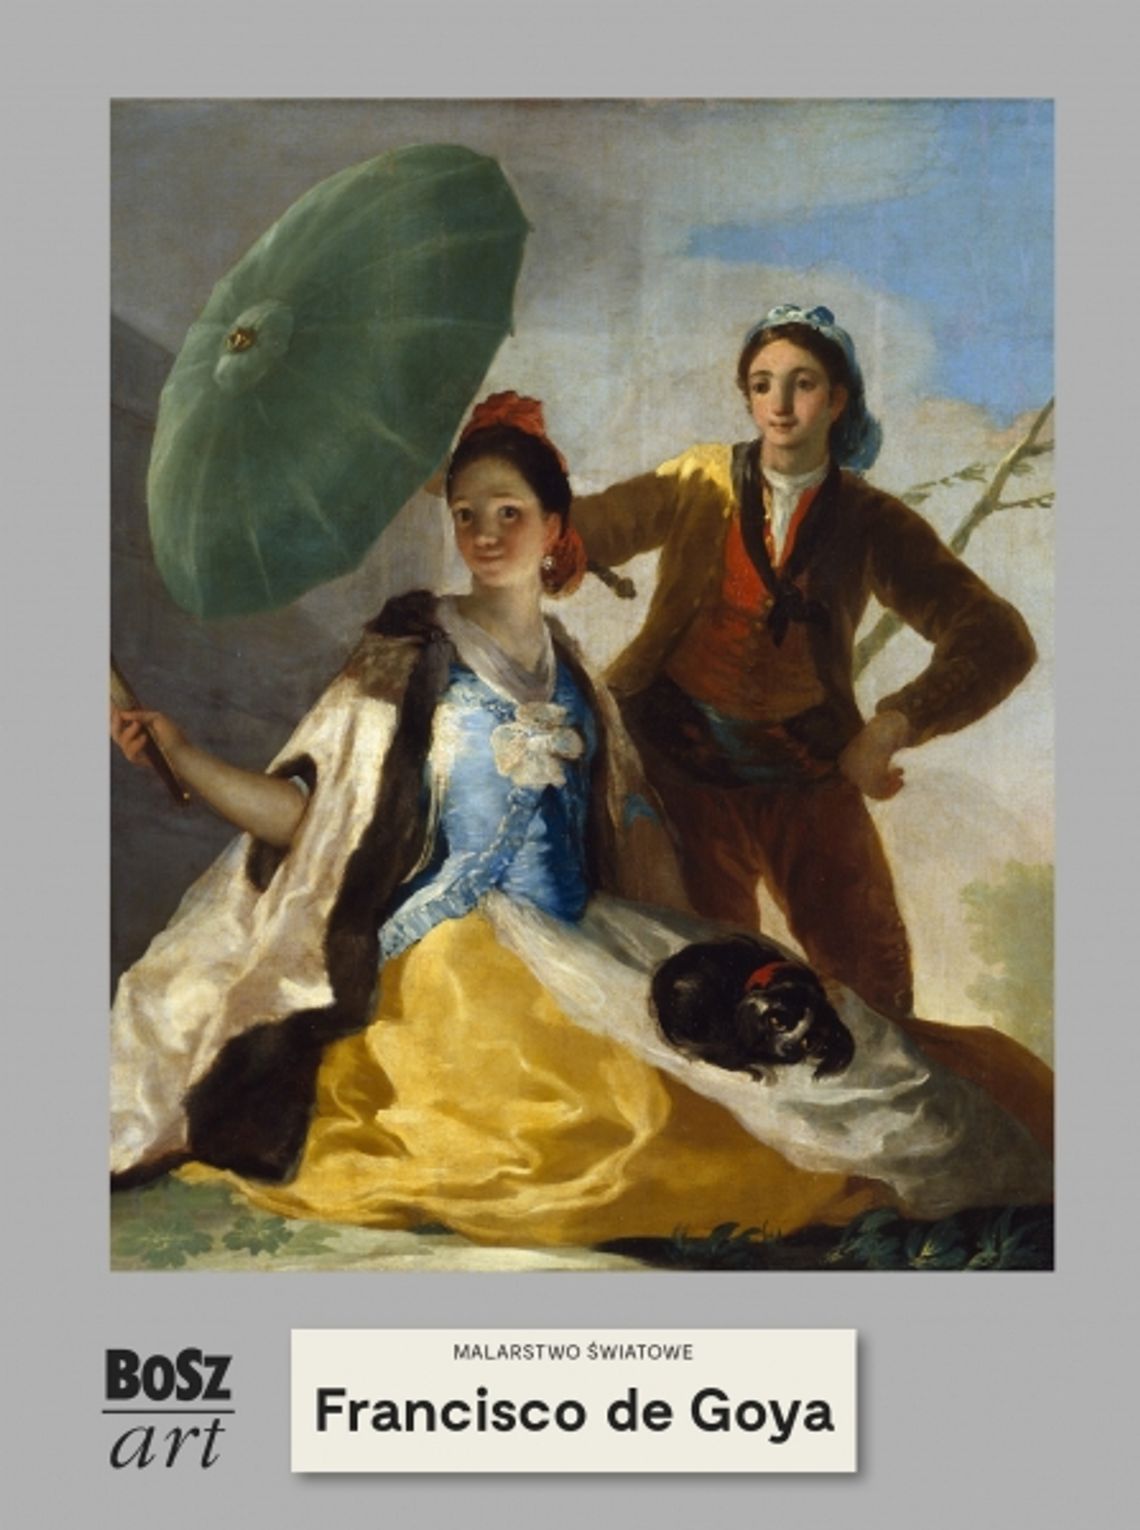 Francisco de Goya. Malarstwo światowe